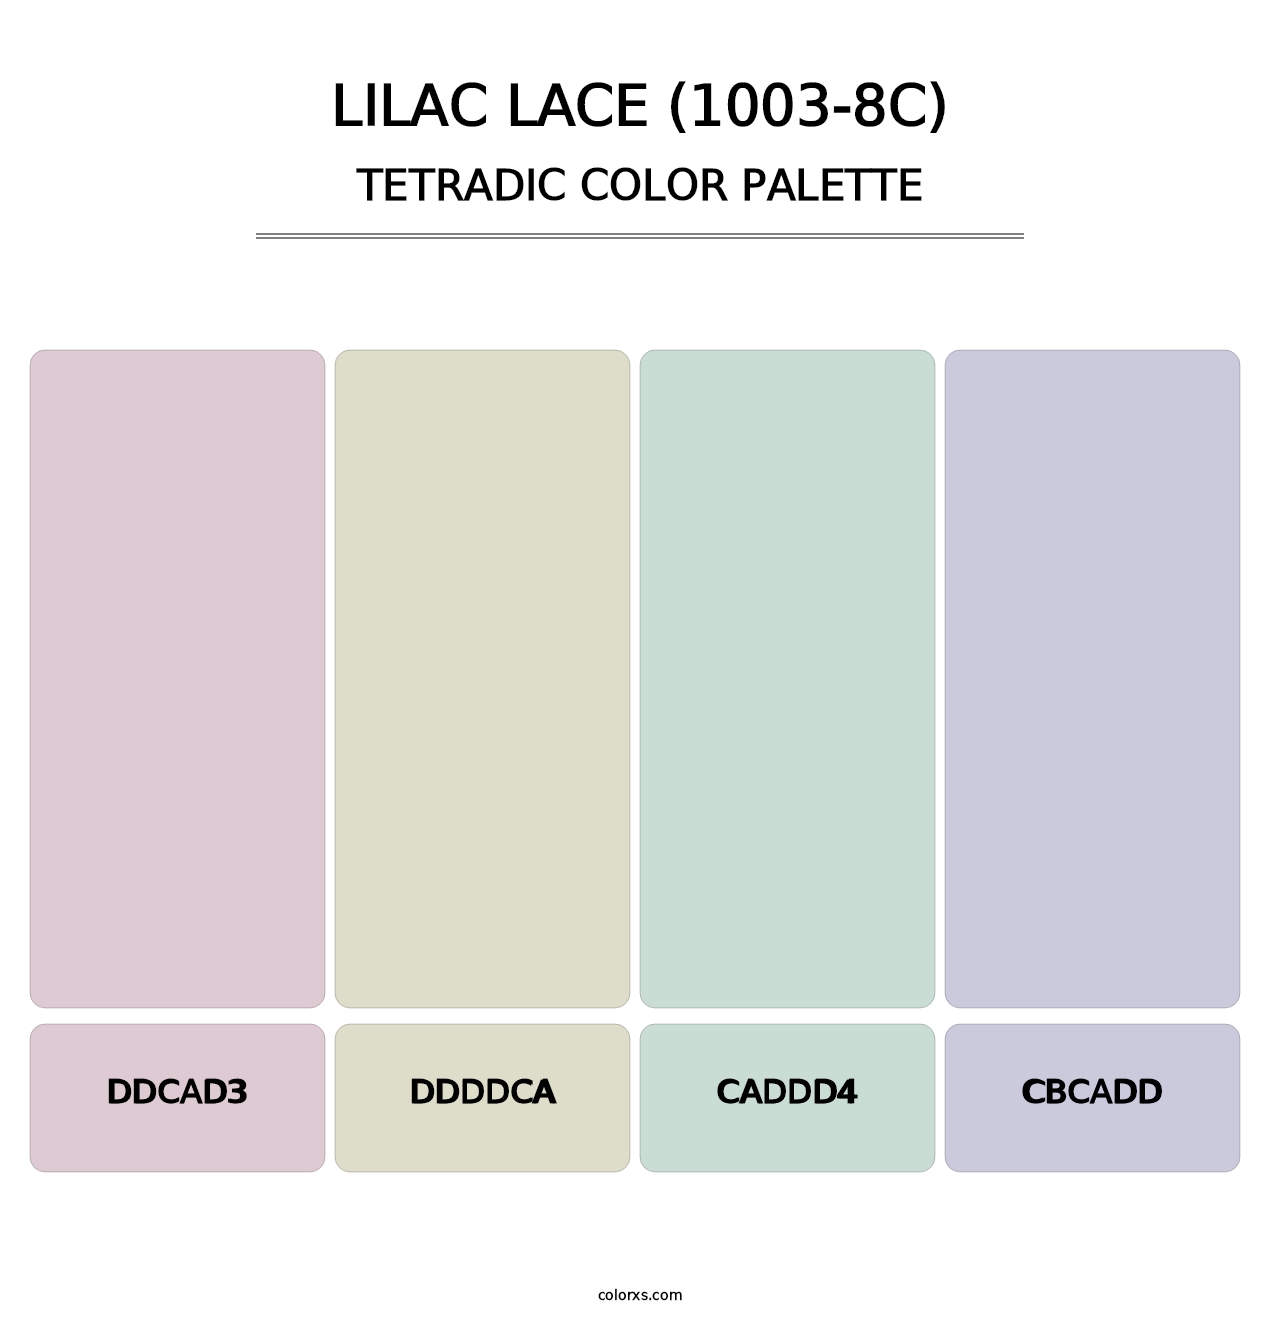 Lilac Lace (1003-8C) - Tetradic Color Palette